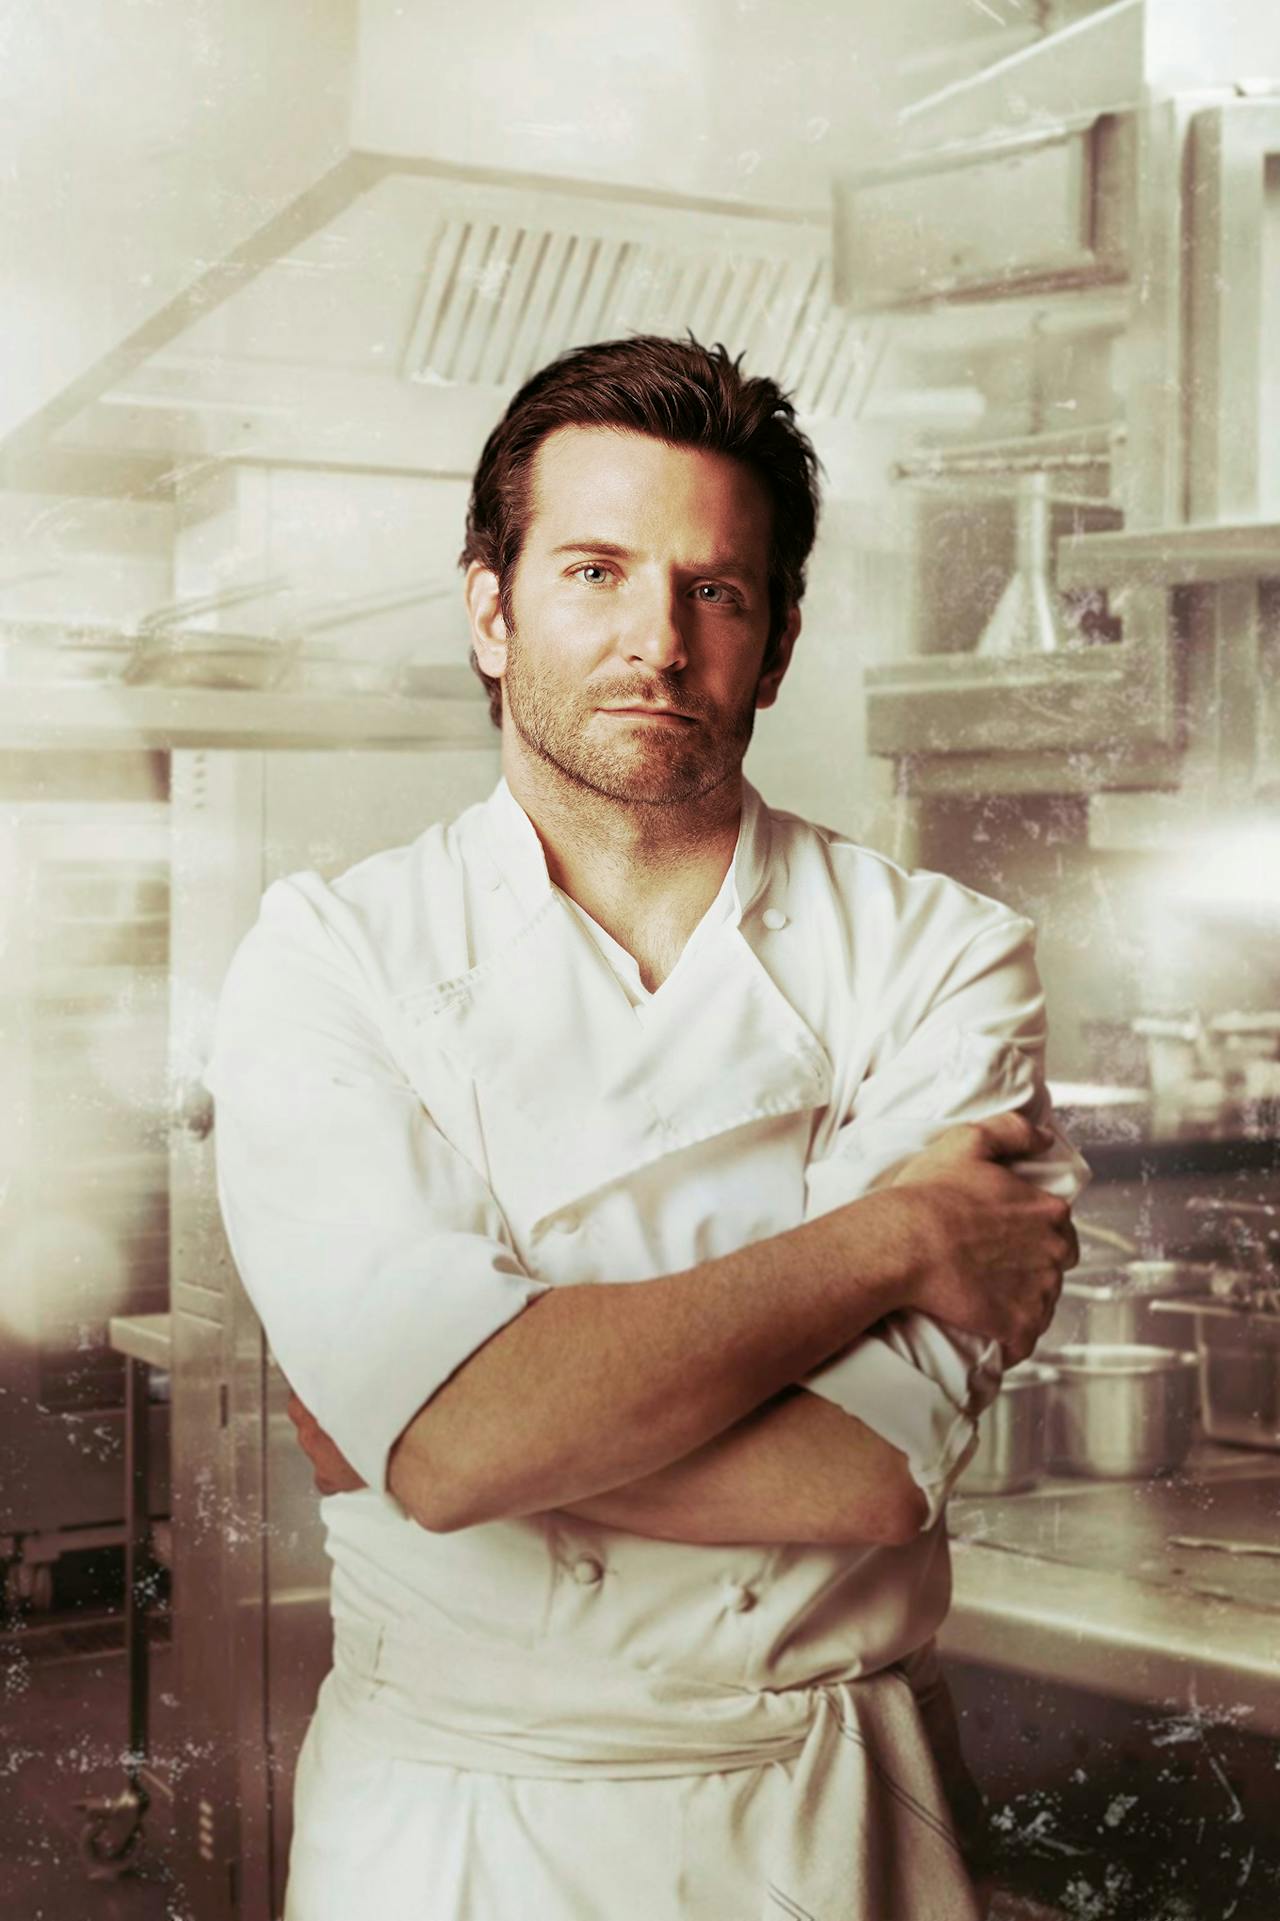 Acteur Bradley Cooper als chef-op-retour Adam Jones in de bioscoophit ‘Burnt’ (John Wells, 2015) gaat na een breakdown voor drie Michelin-sterren.